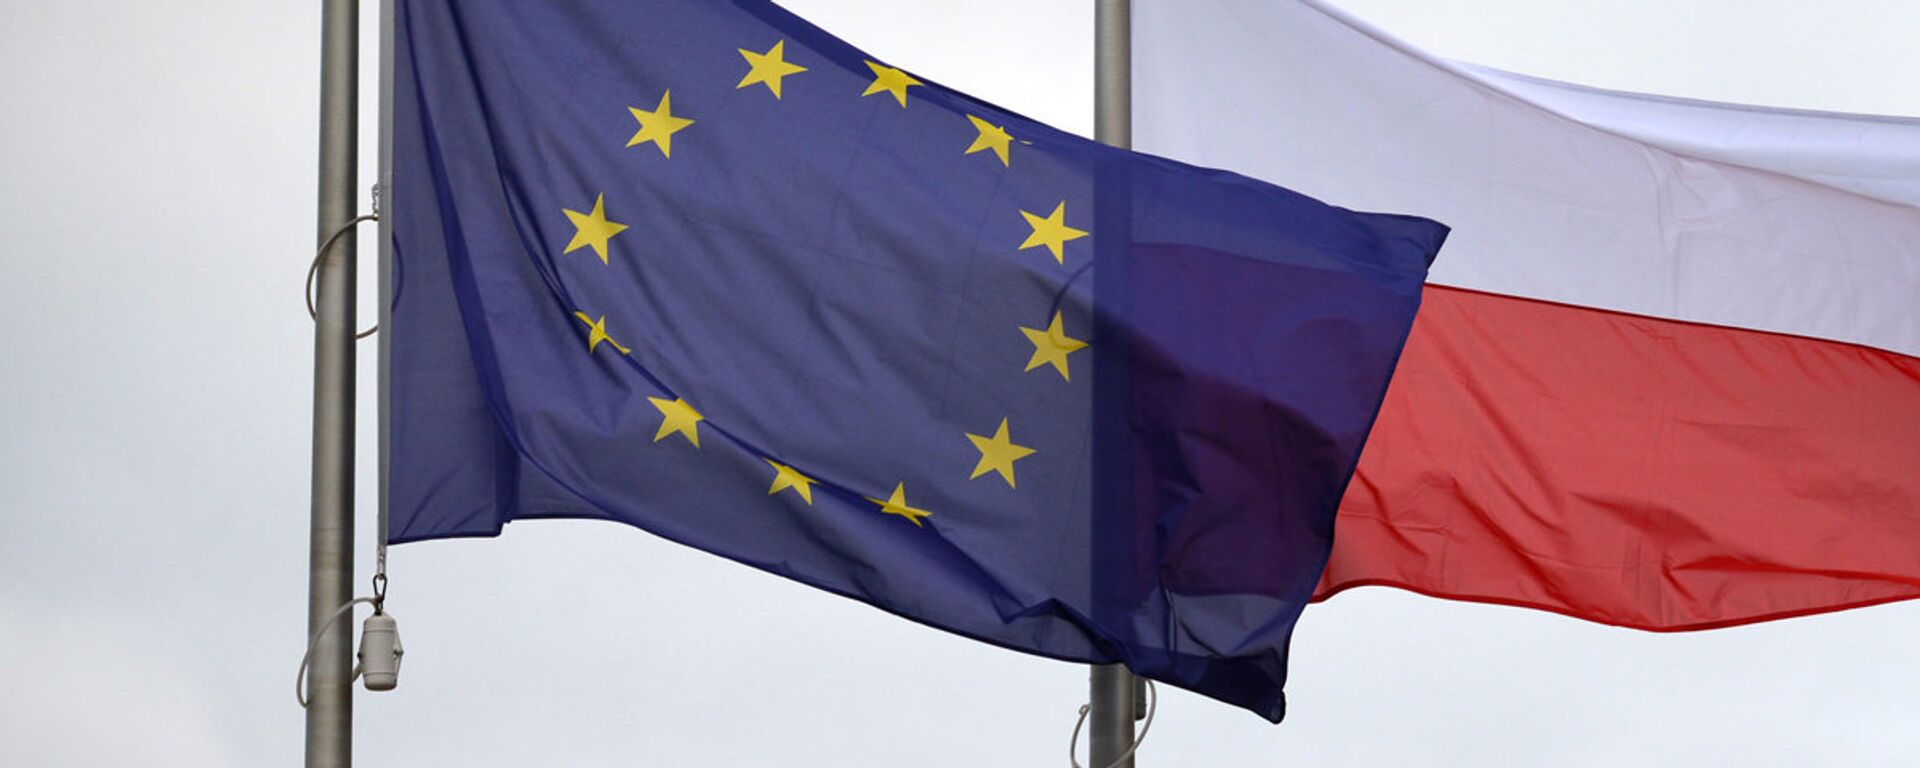 Флаги Евросоюза и Польши - Sputnik Латвия, 1920, 10.11.2018